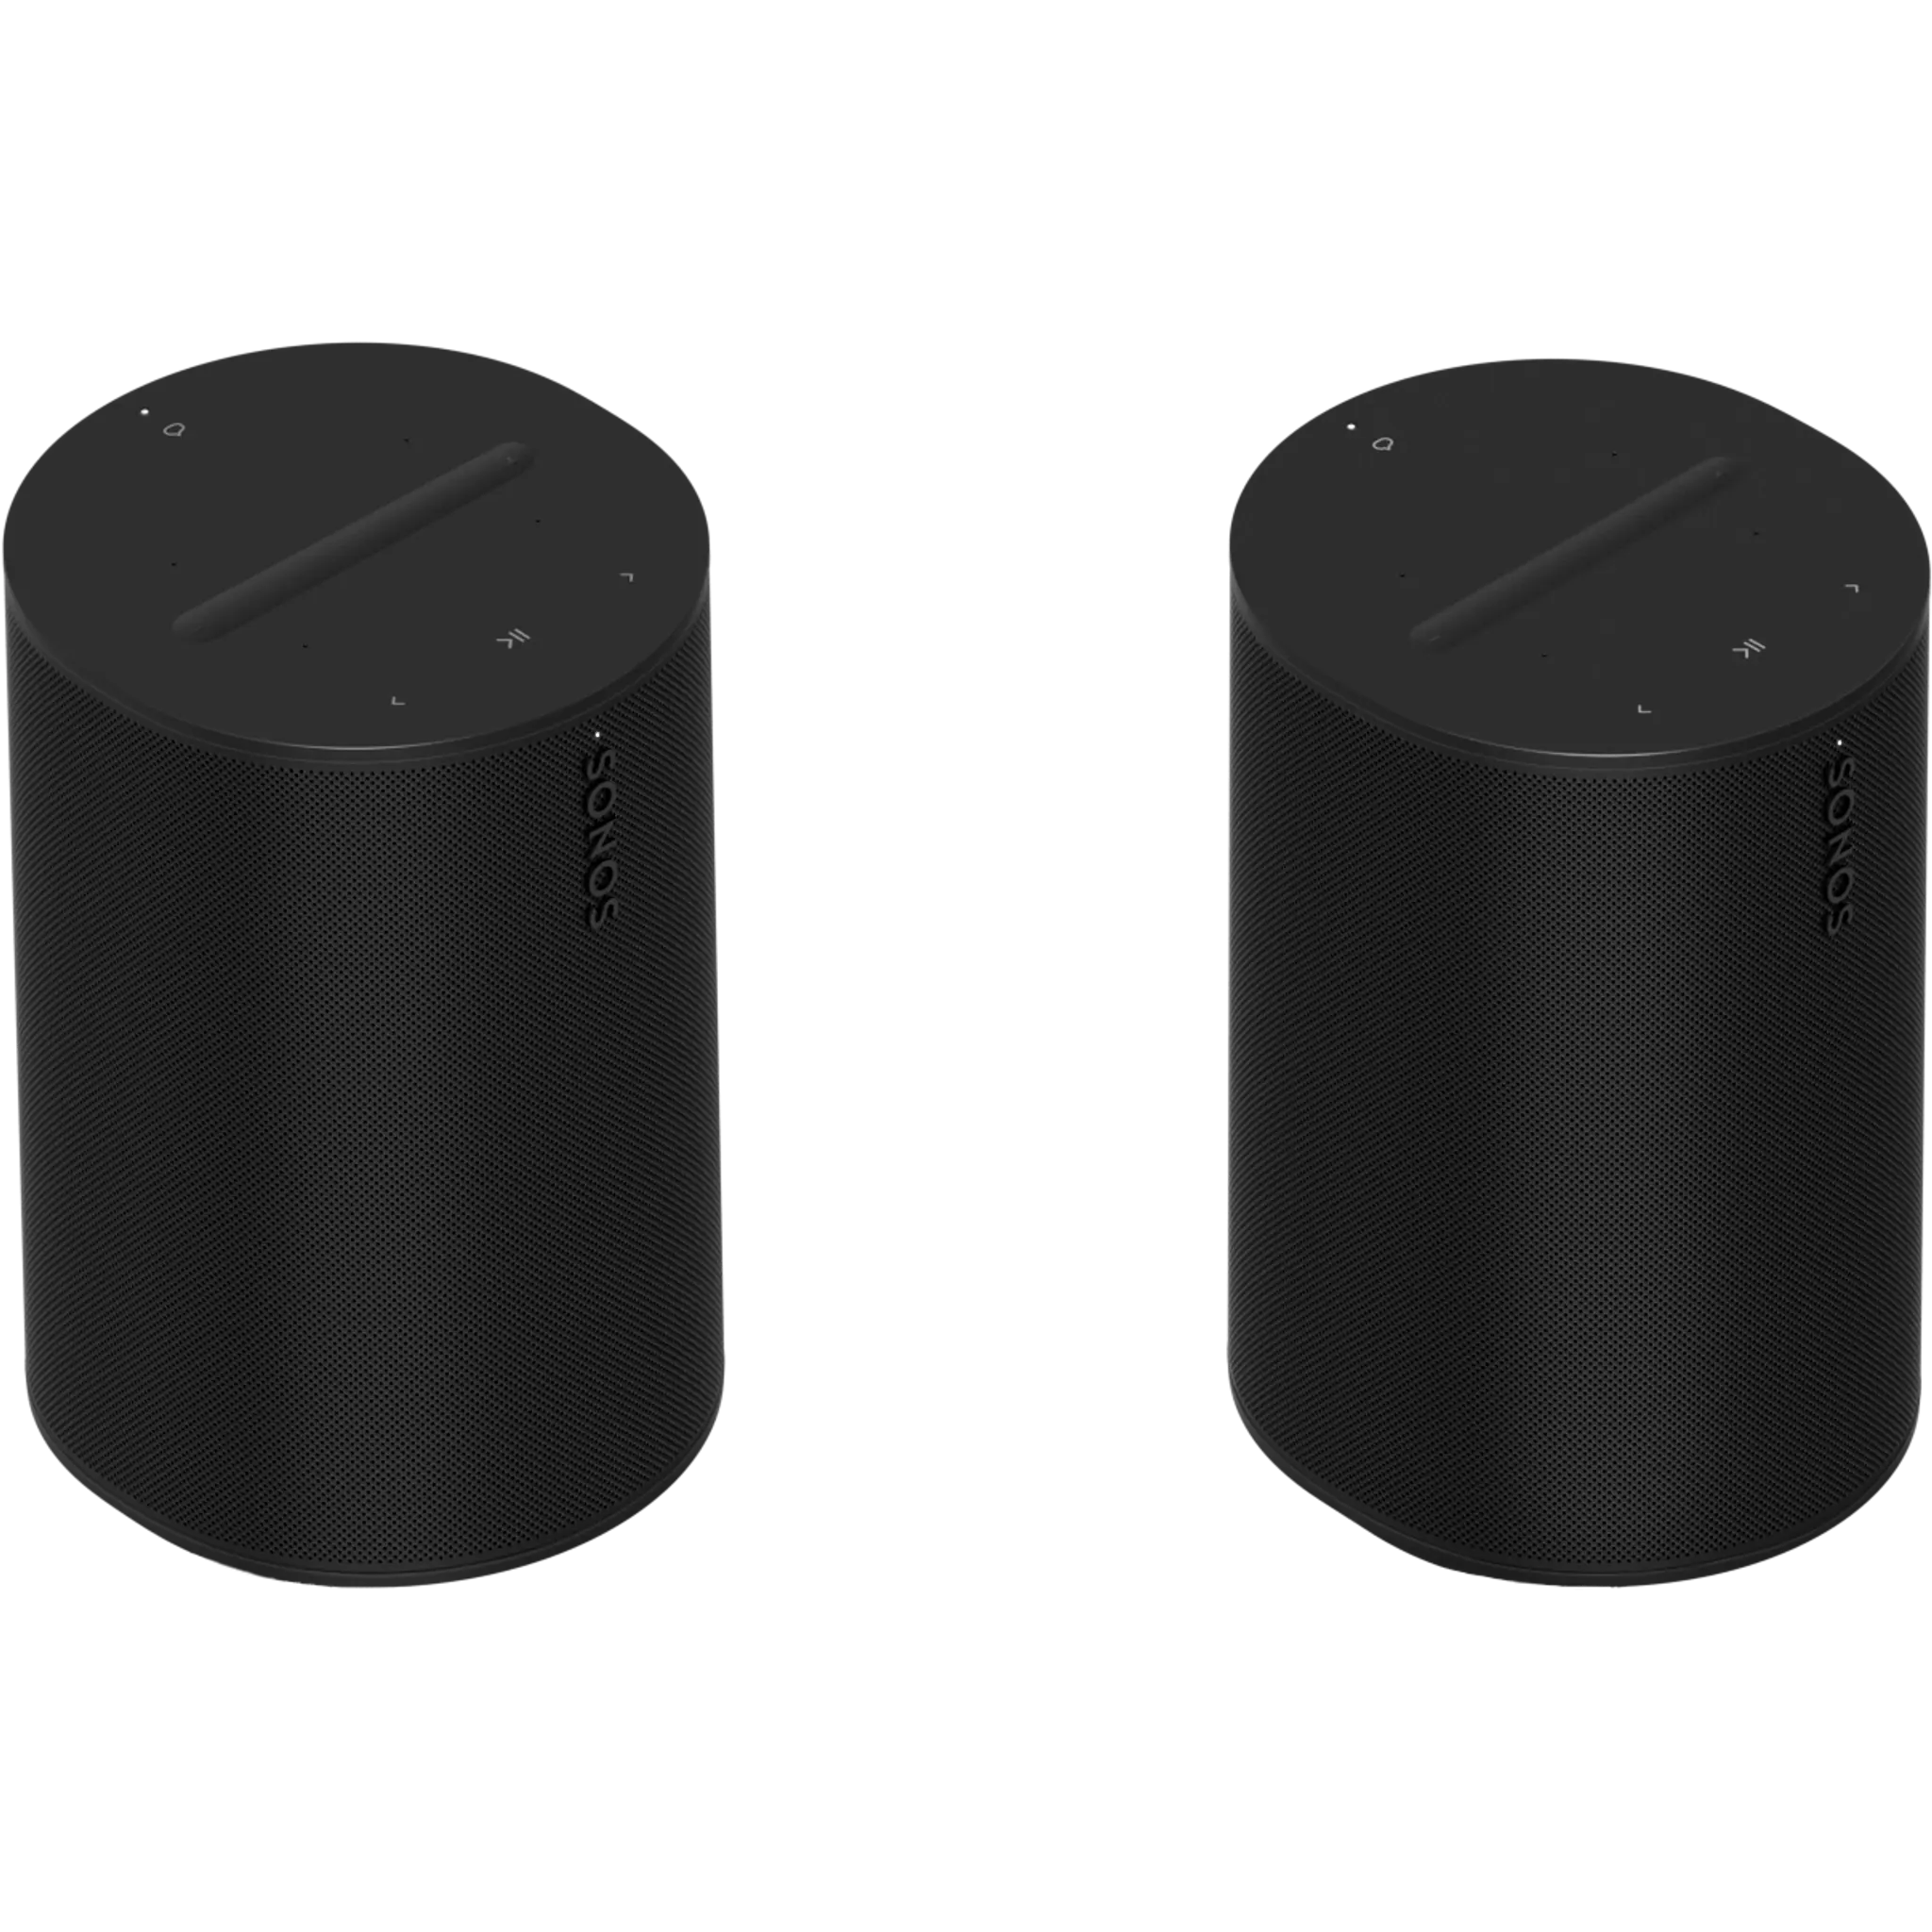 Sonos Era 100 vs. Sonos One: Which smart speaker should you buy?